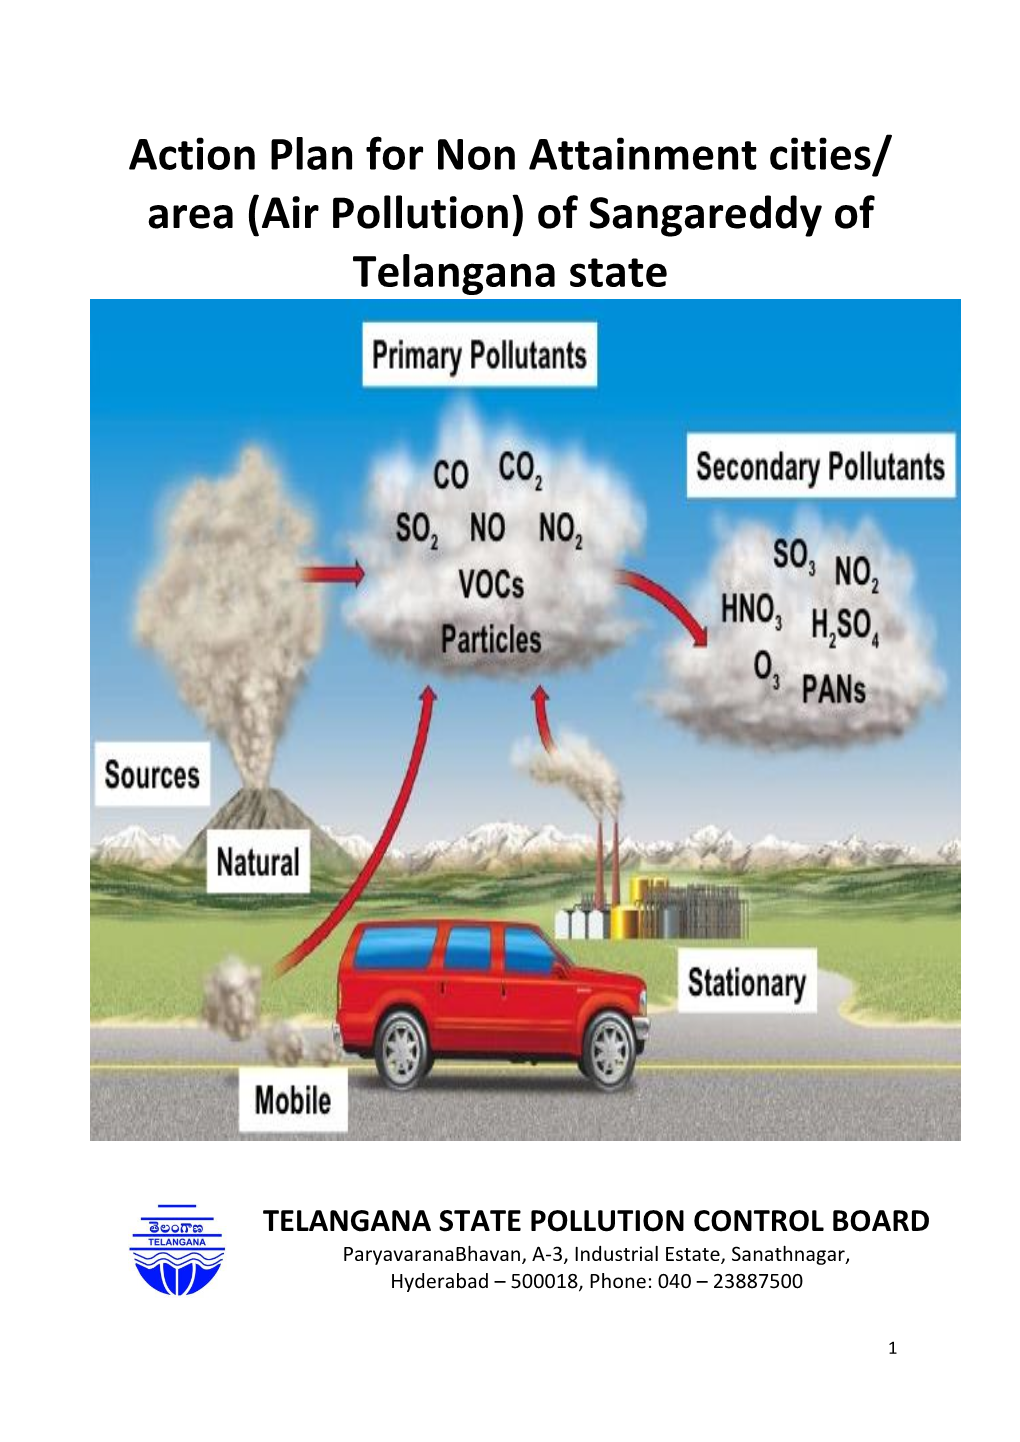 Sangareddy of Telangana State